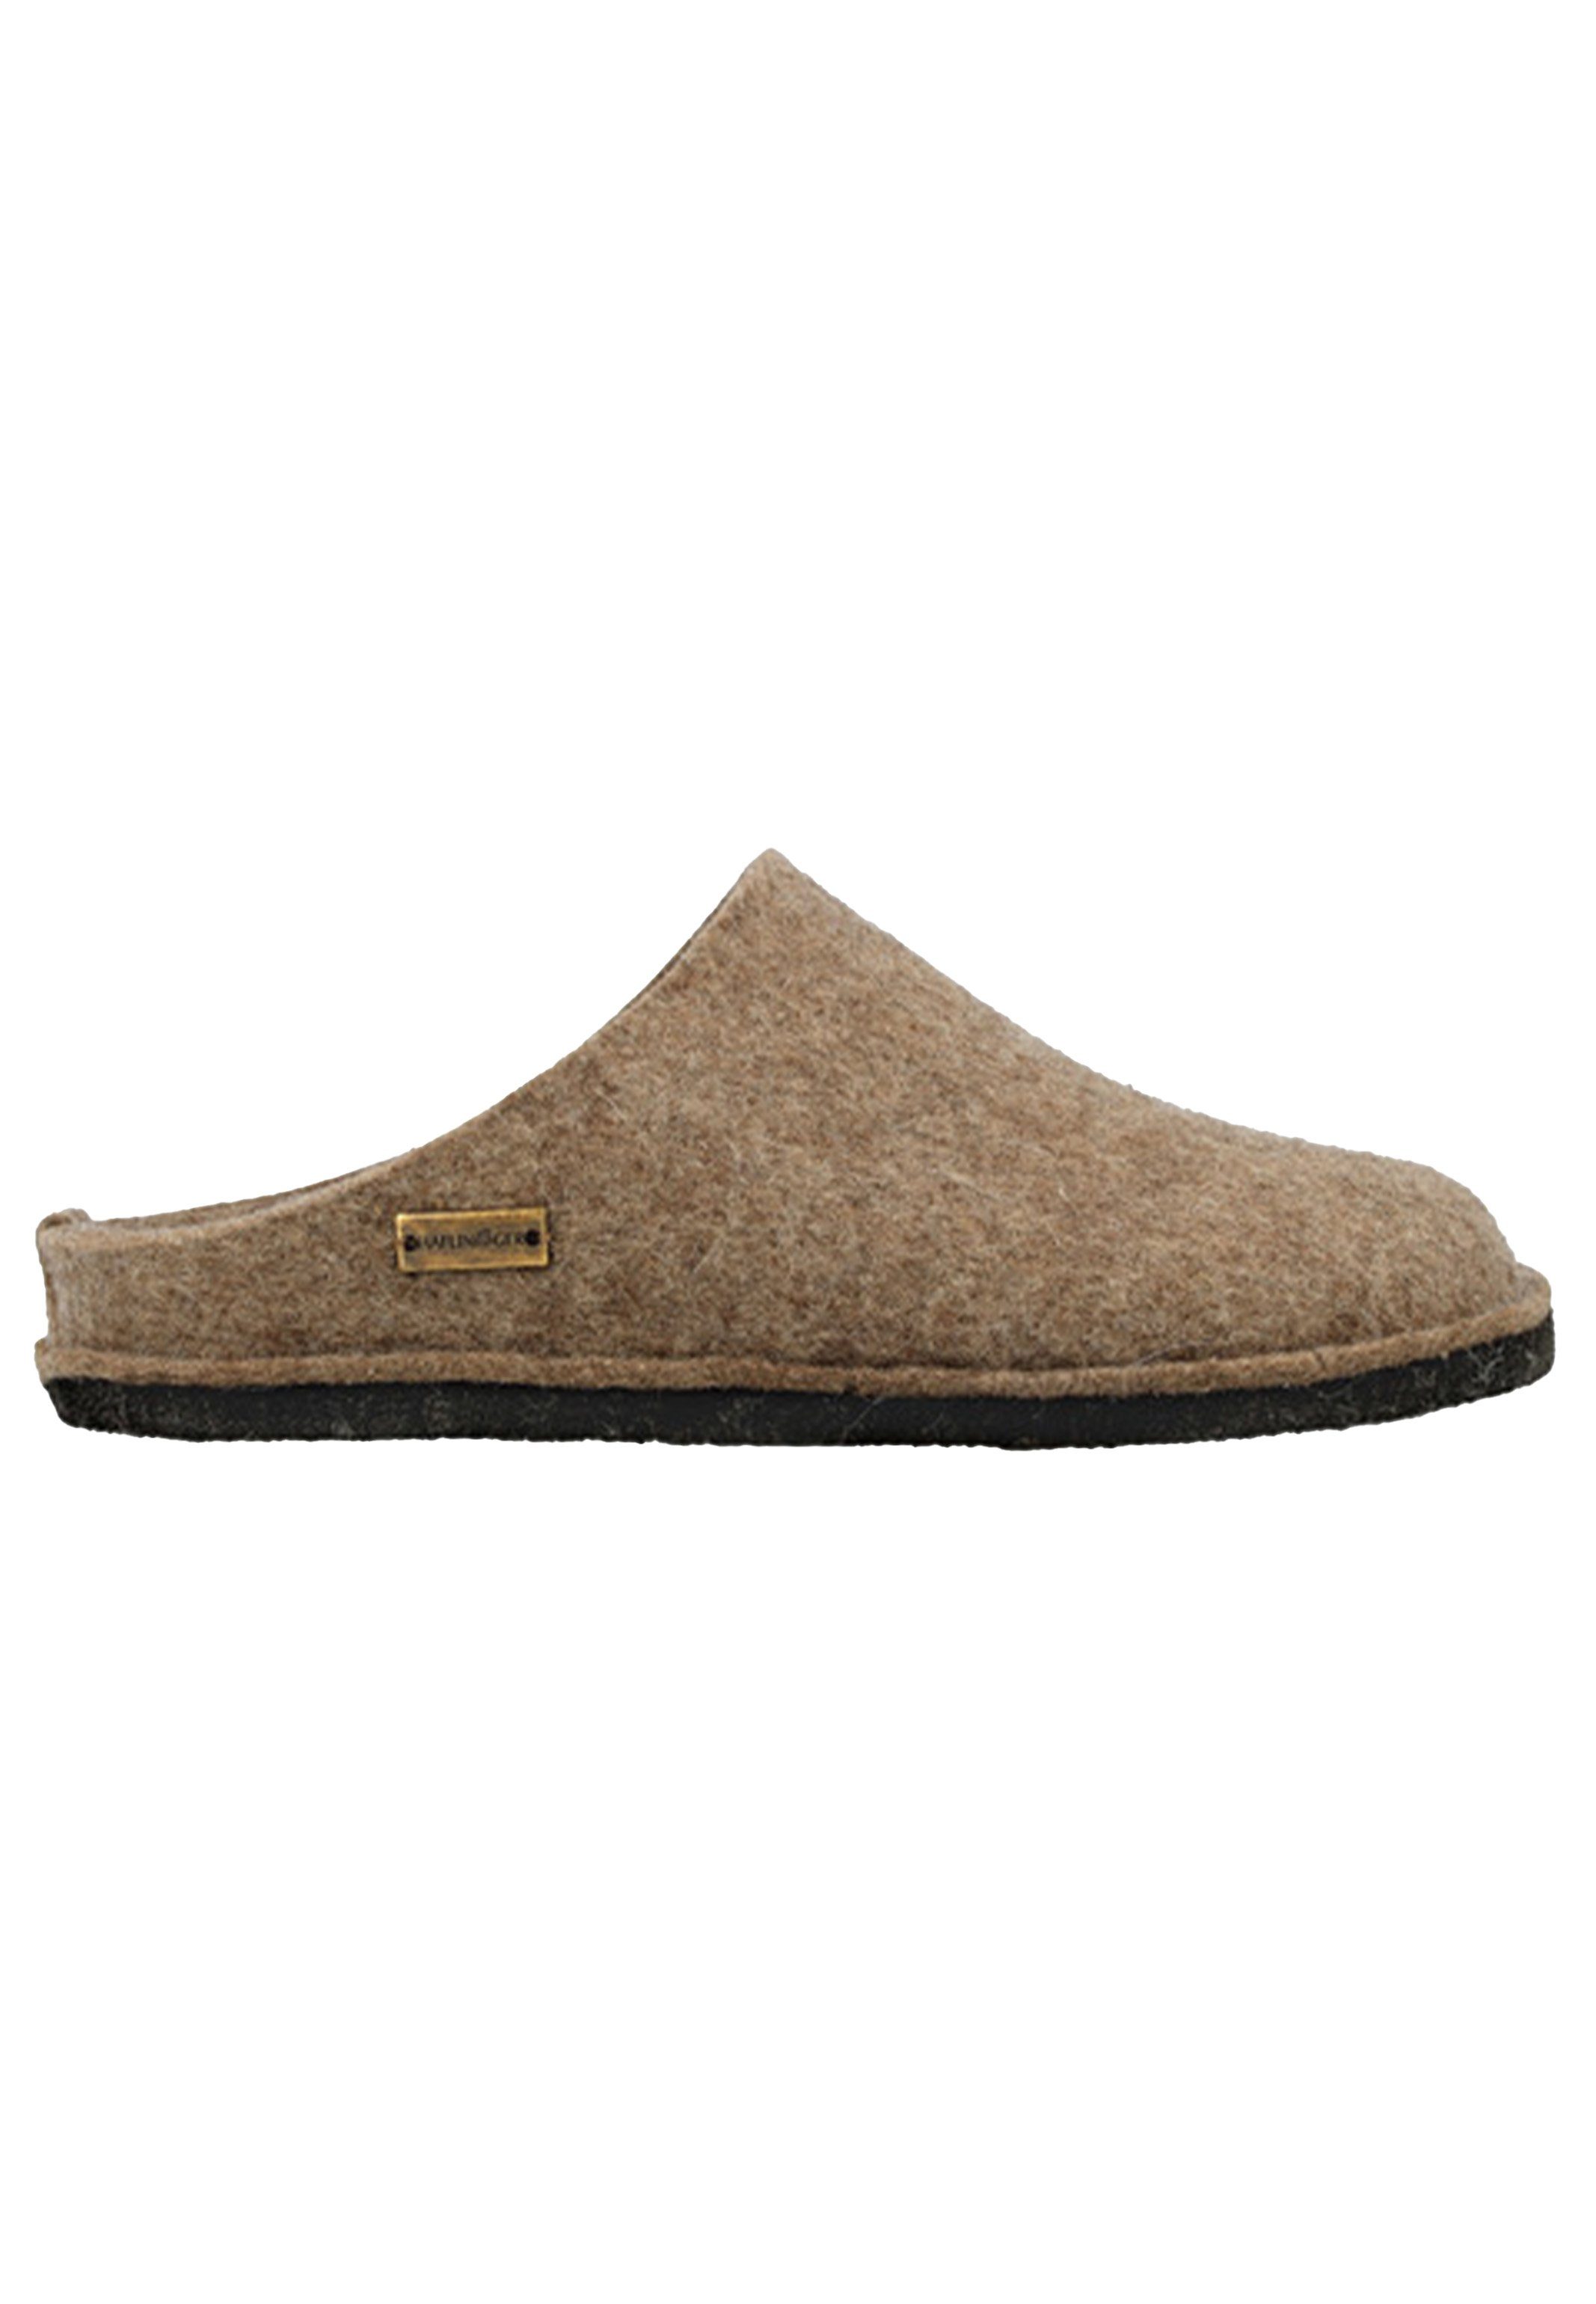 Haflinger Flair Soft Pantoffel Pantoffeln - 100% reiner Wollfilz, Eingearbeitetes Fußbett